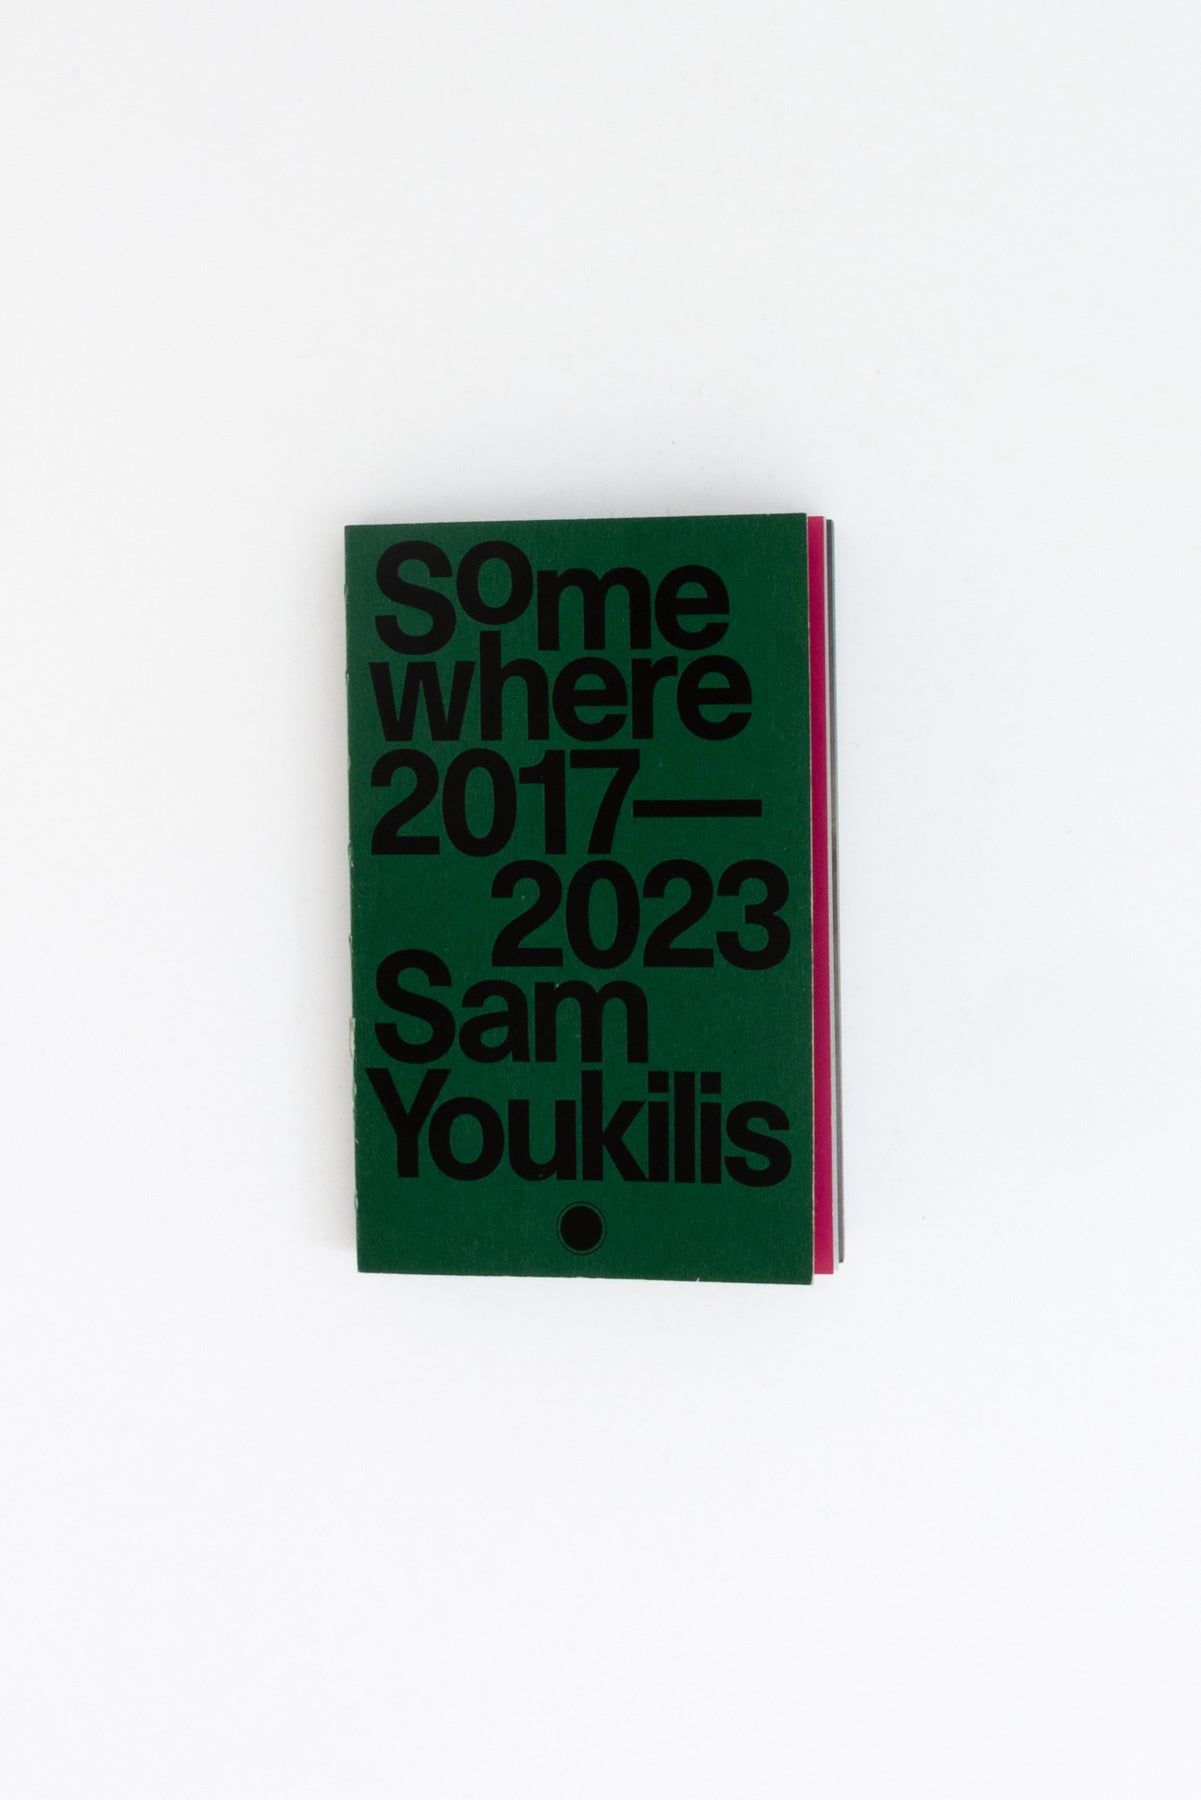 Somewhere 2017-2023 - Sam Youkilis